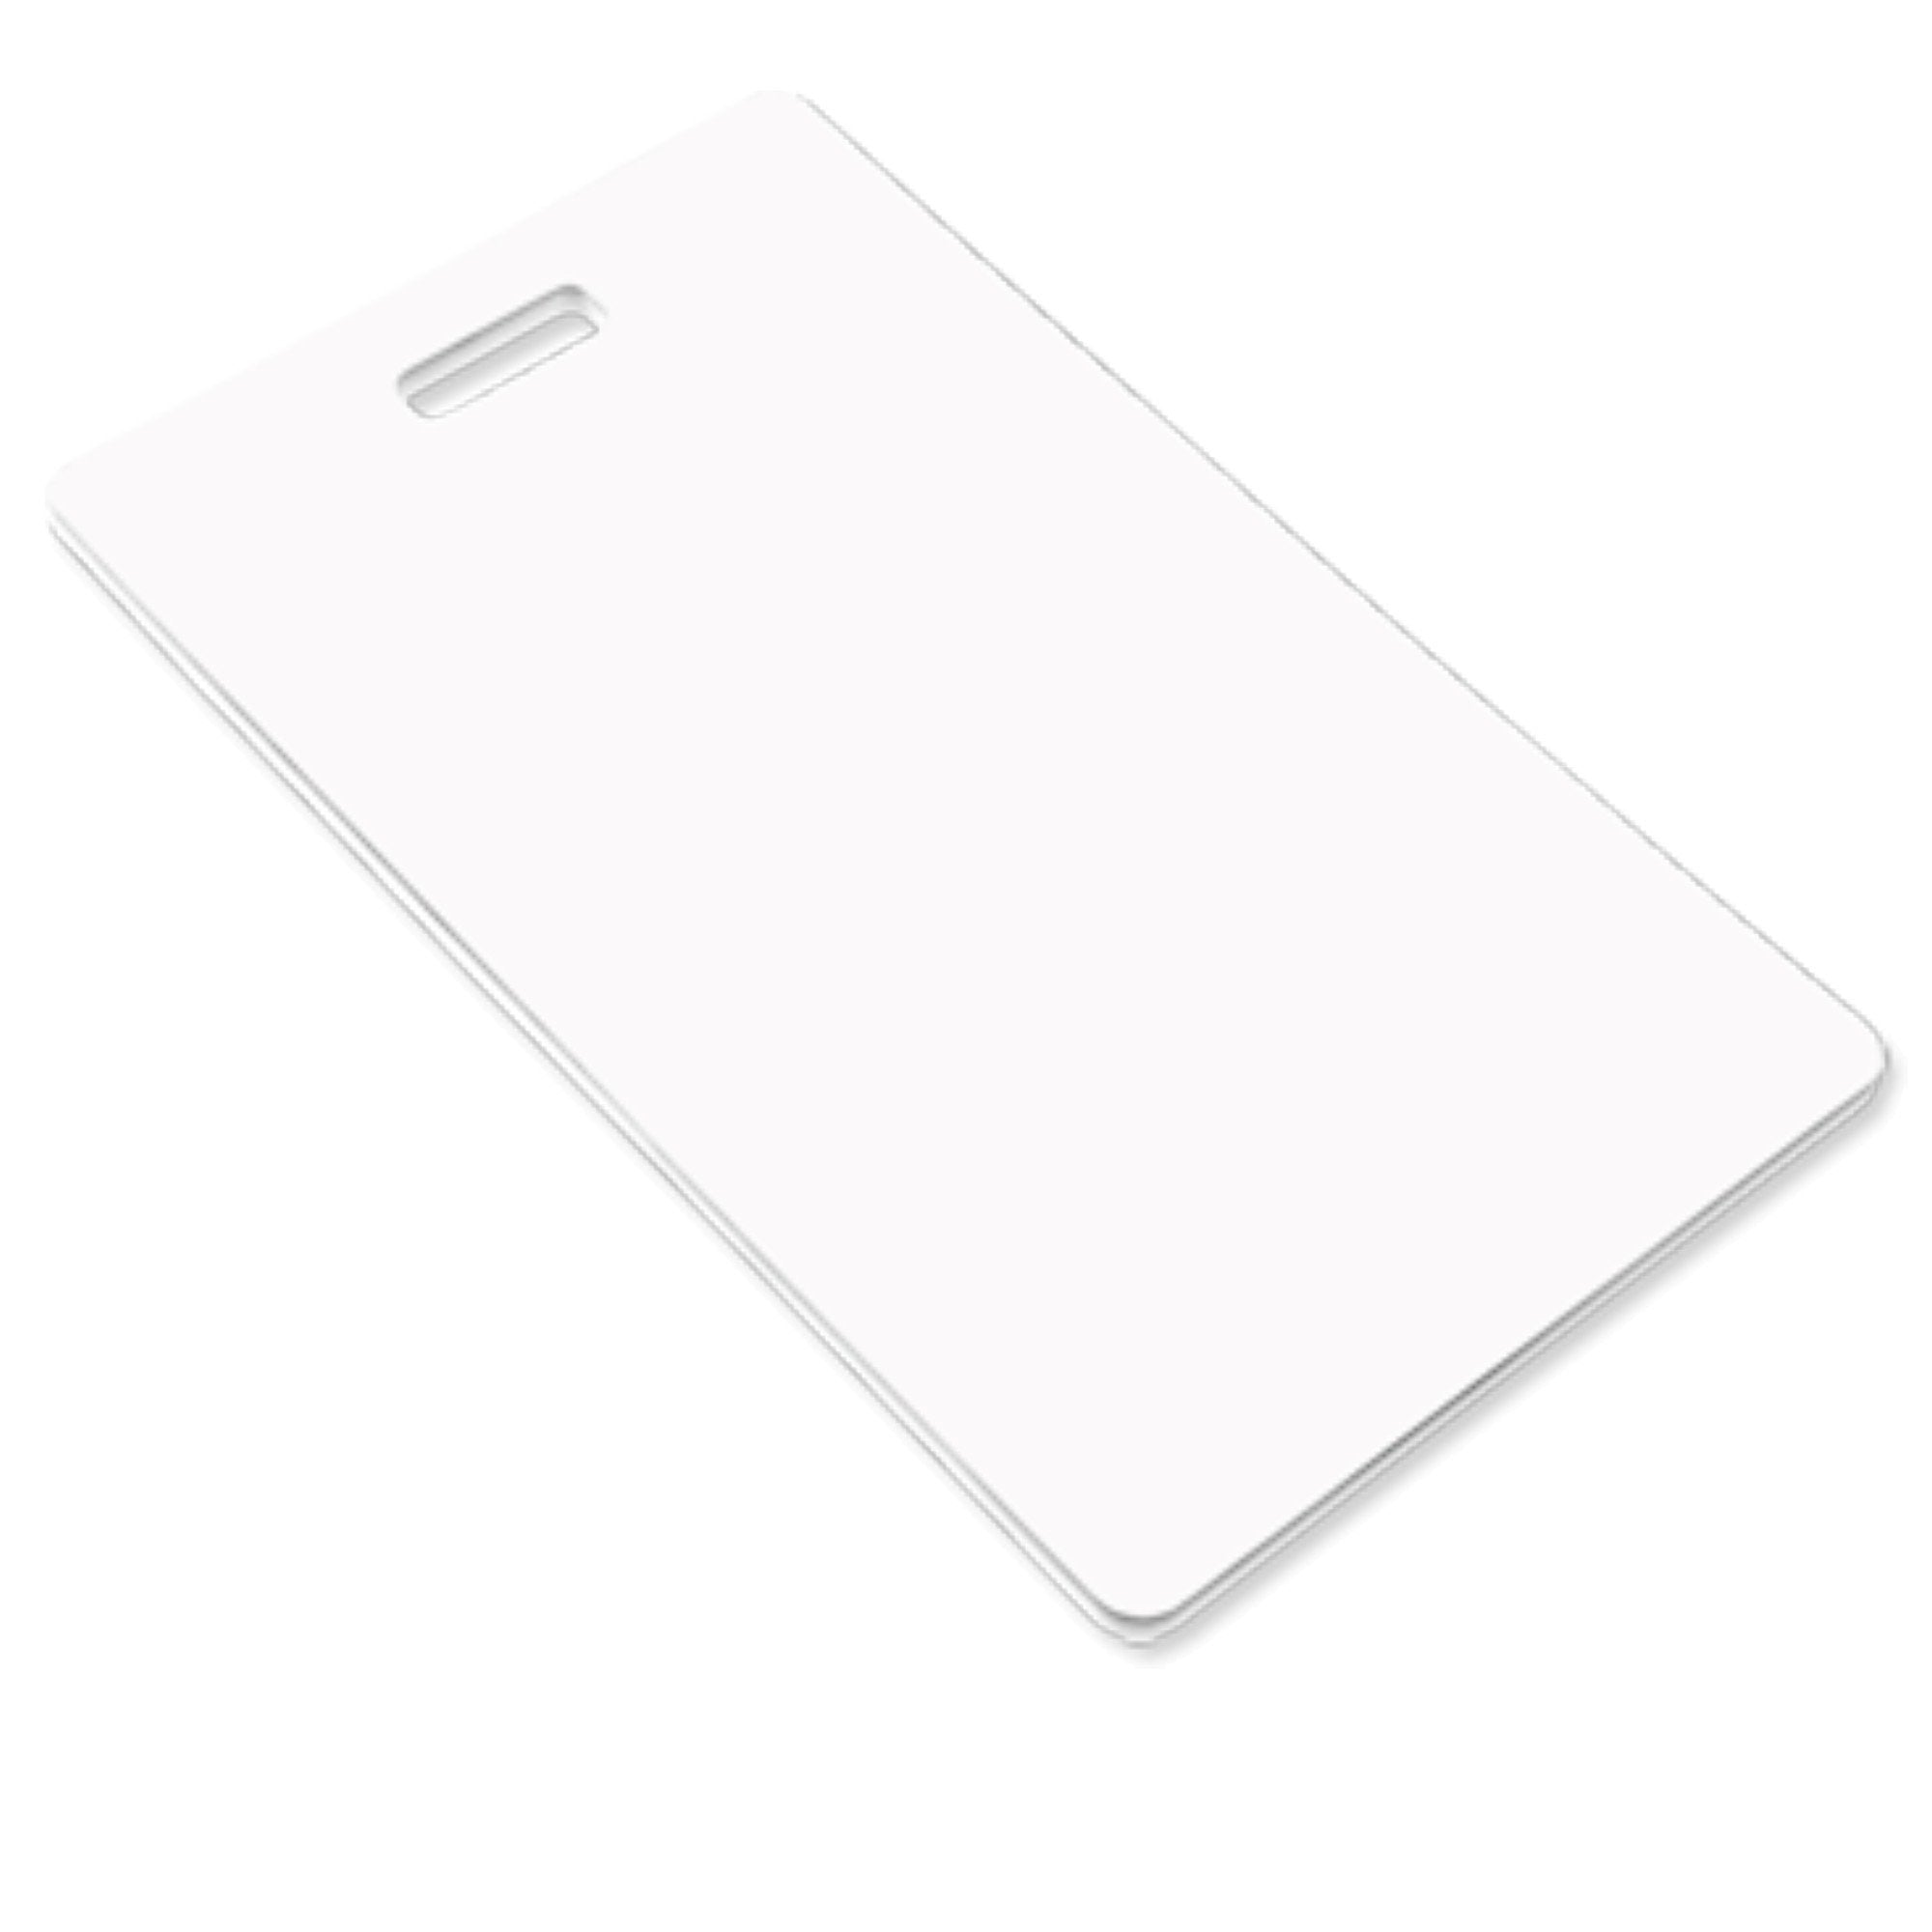 Unisub Sublimation Blank Aluminum Key Tag, 2-Sided 1.6 x 2.25 Rectangle  #5995 (5 Pack)